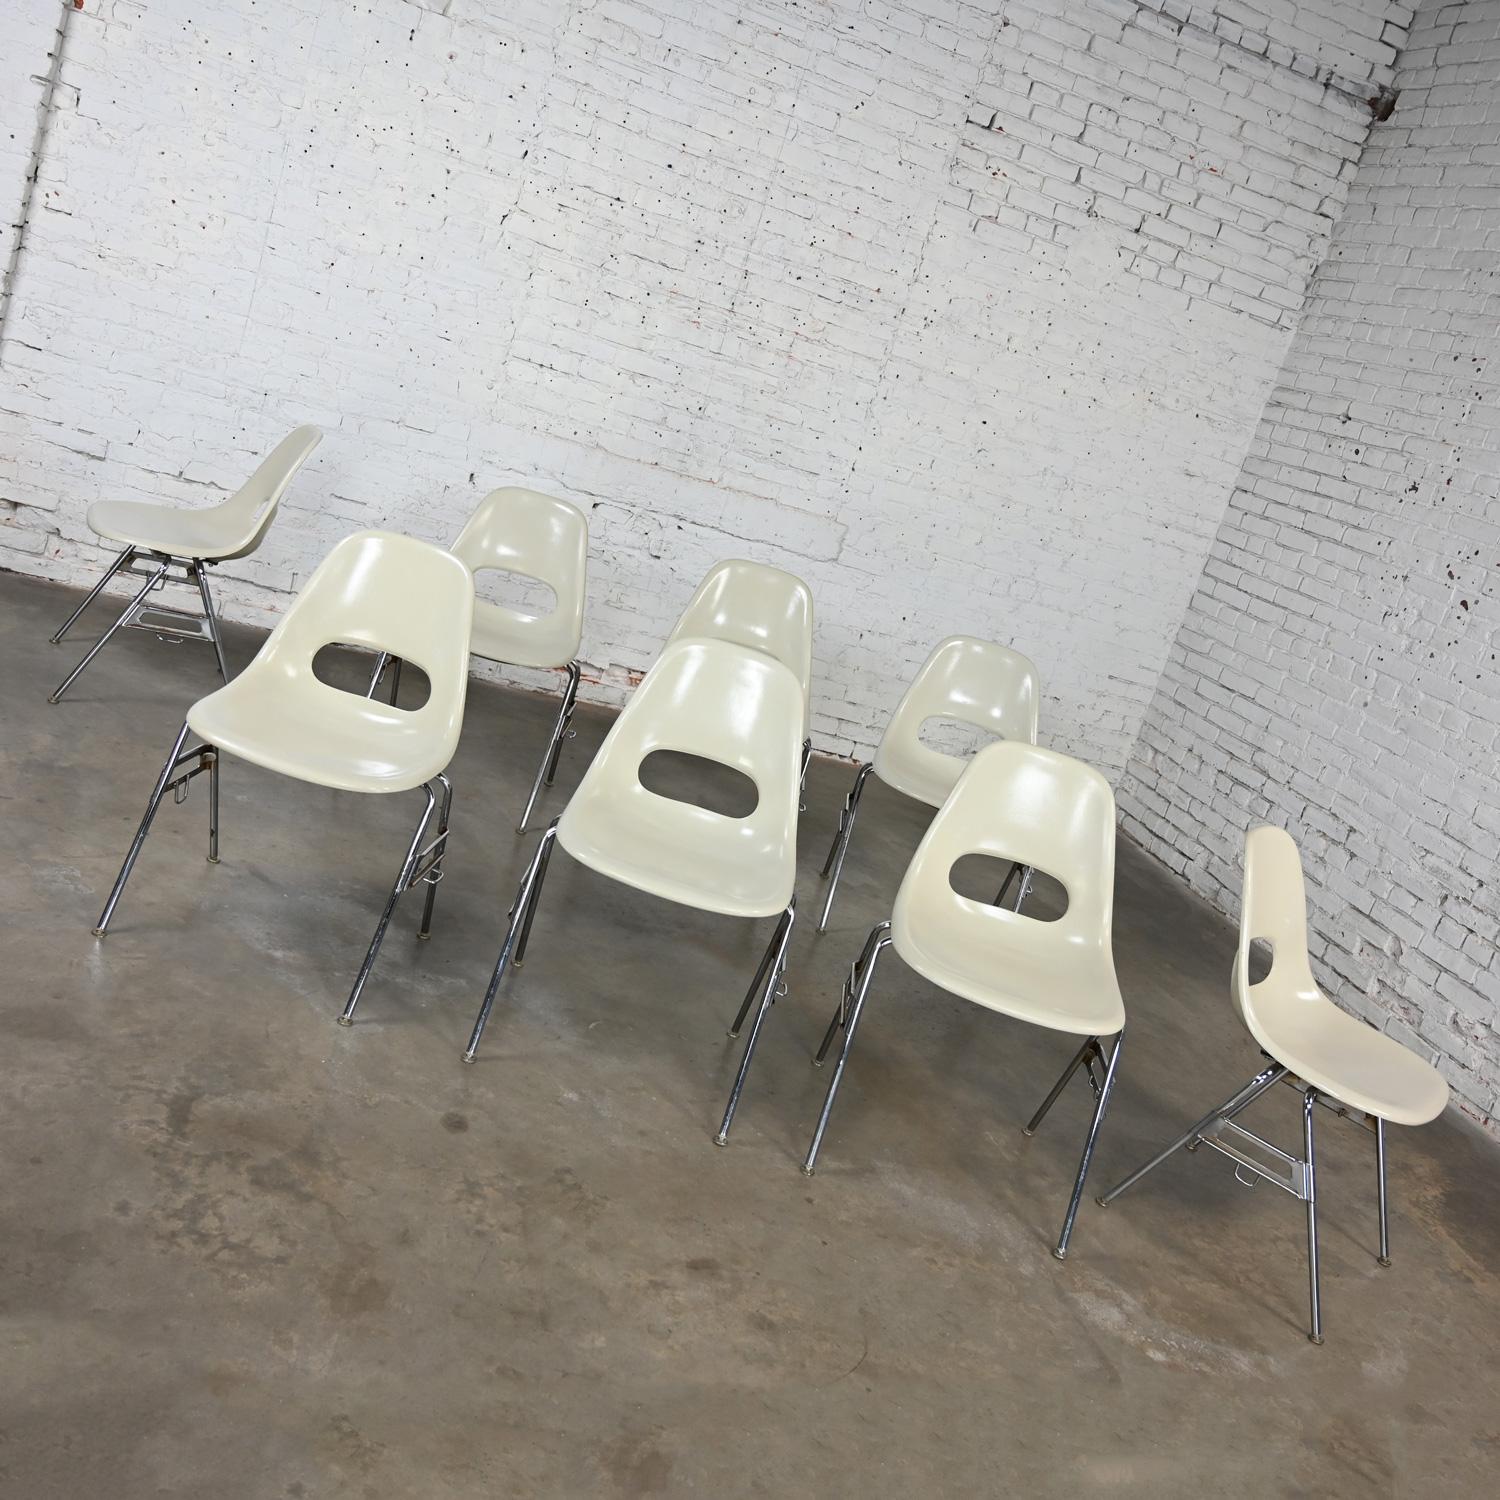 1960-70’s MCM Krueger International White Fiberglass & Chrome Stacking Chairs 8 For Sale 2